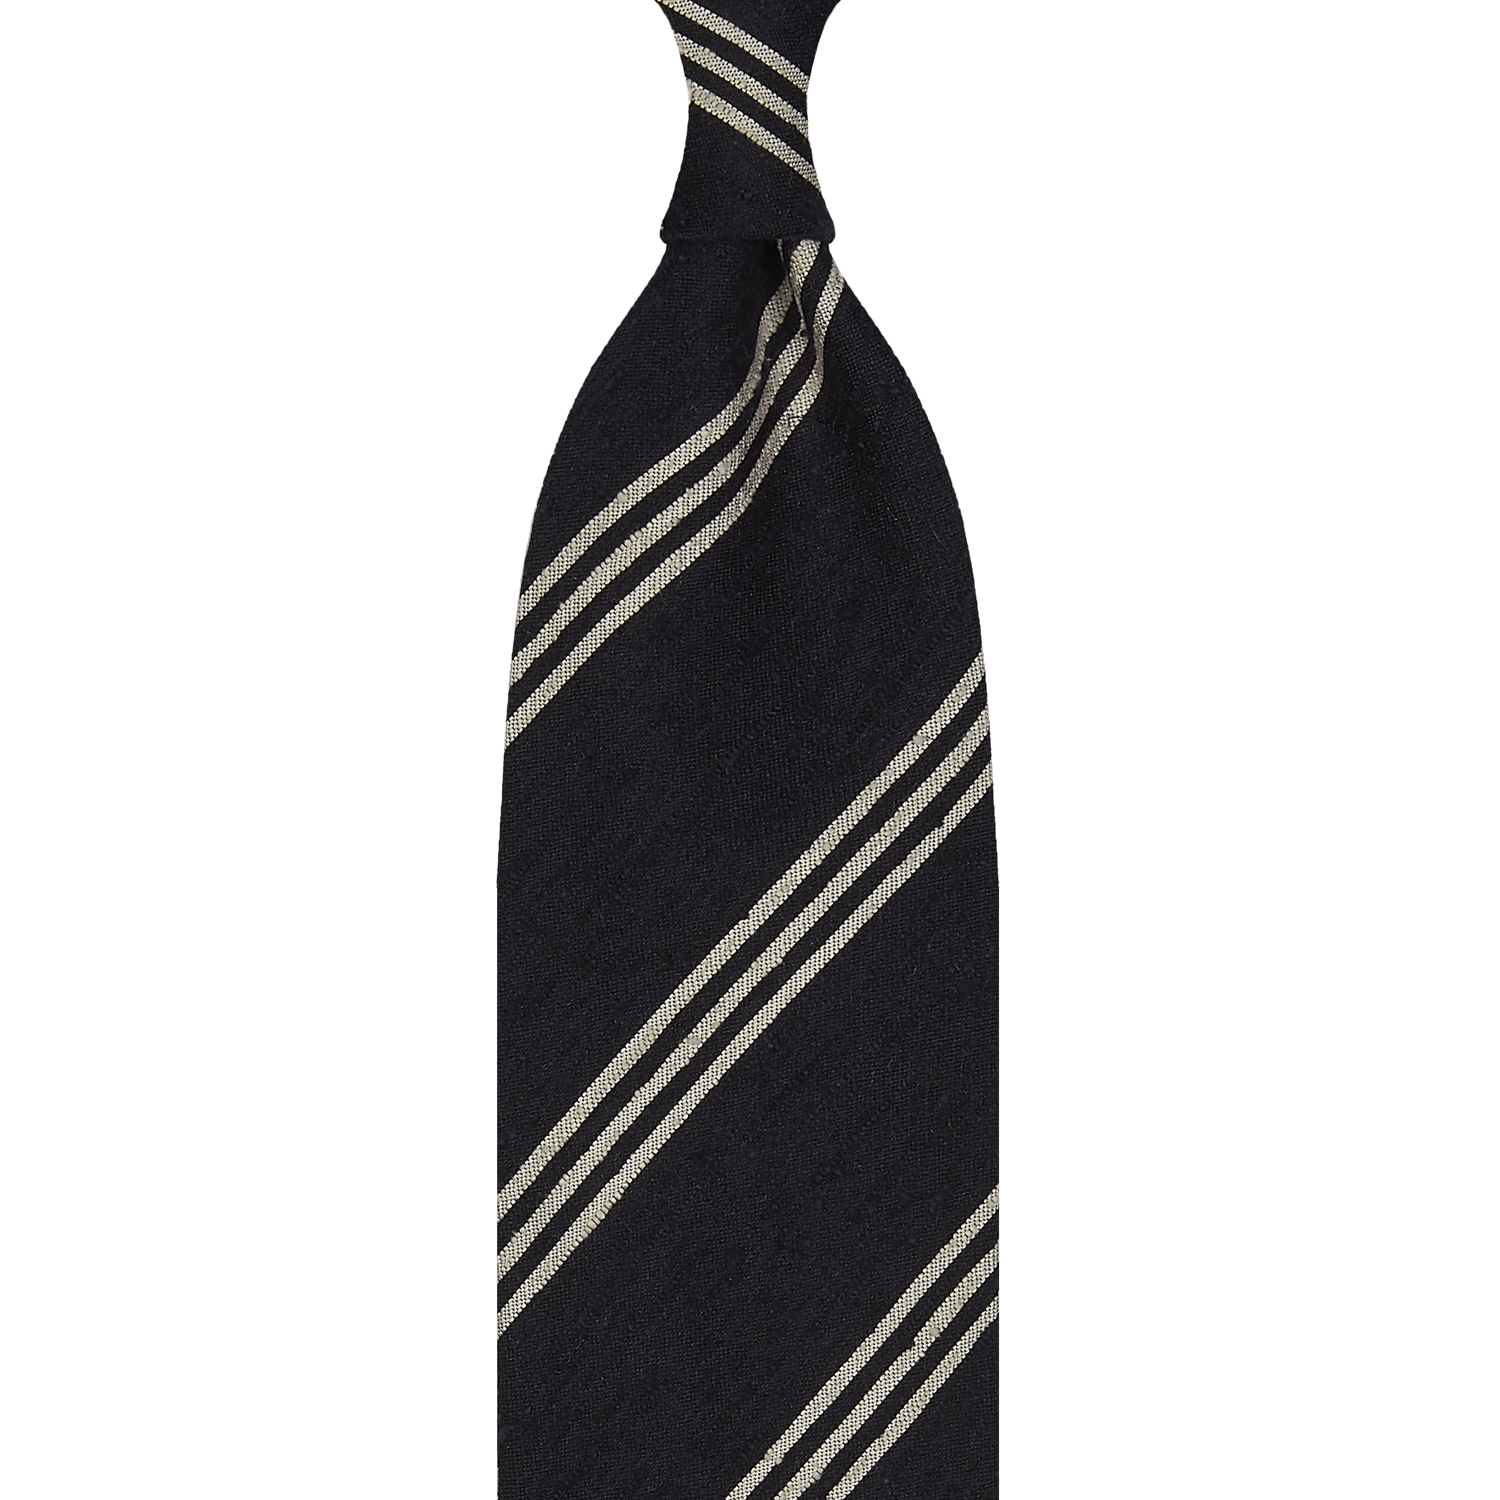 Cravate rayée en shantung de soie bleu marine et beige, roulée à la main